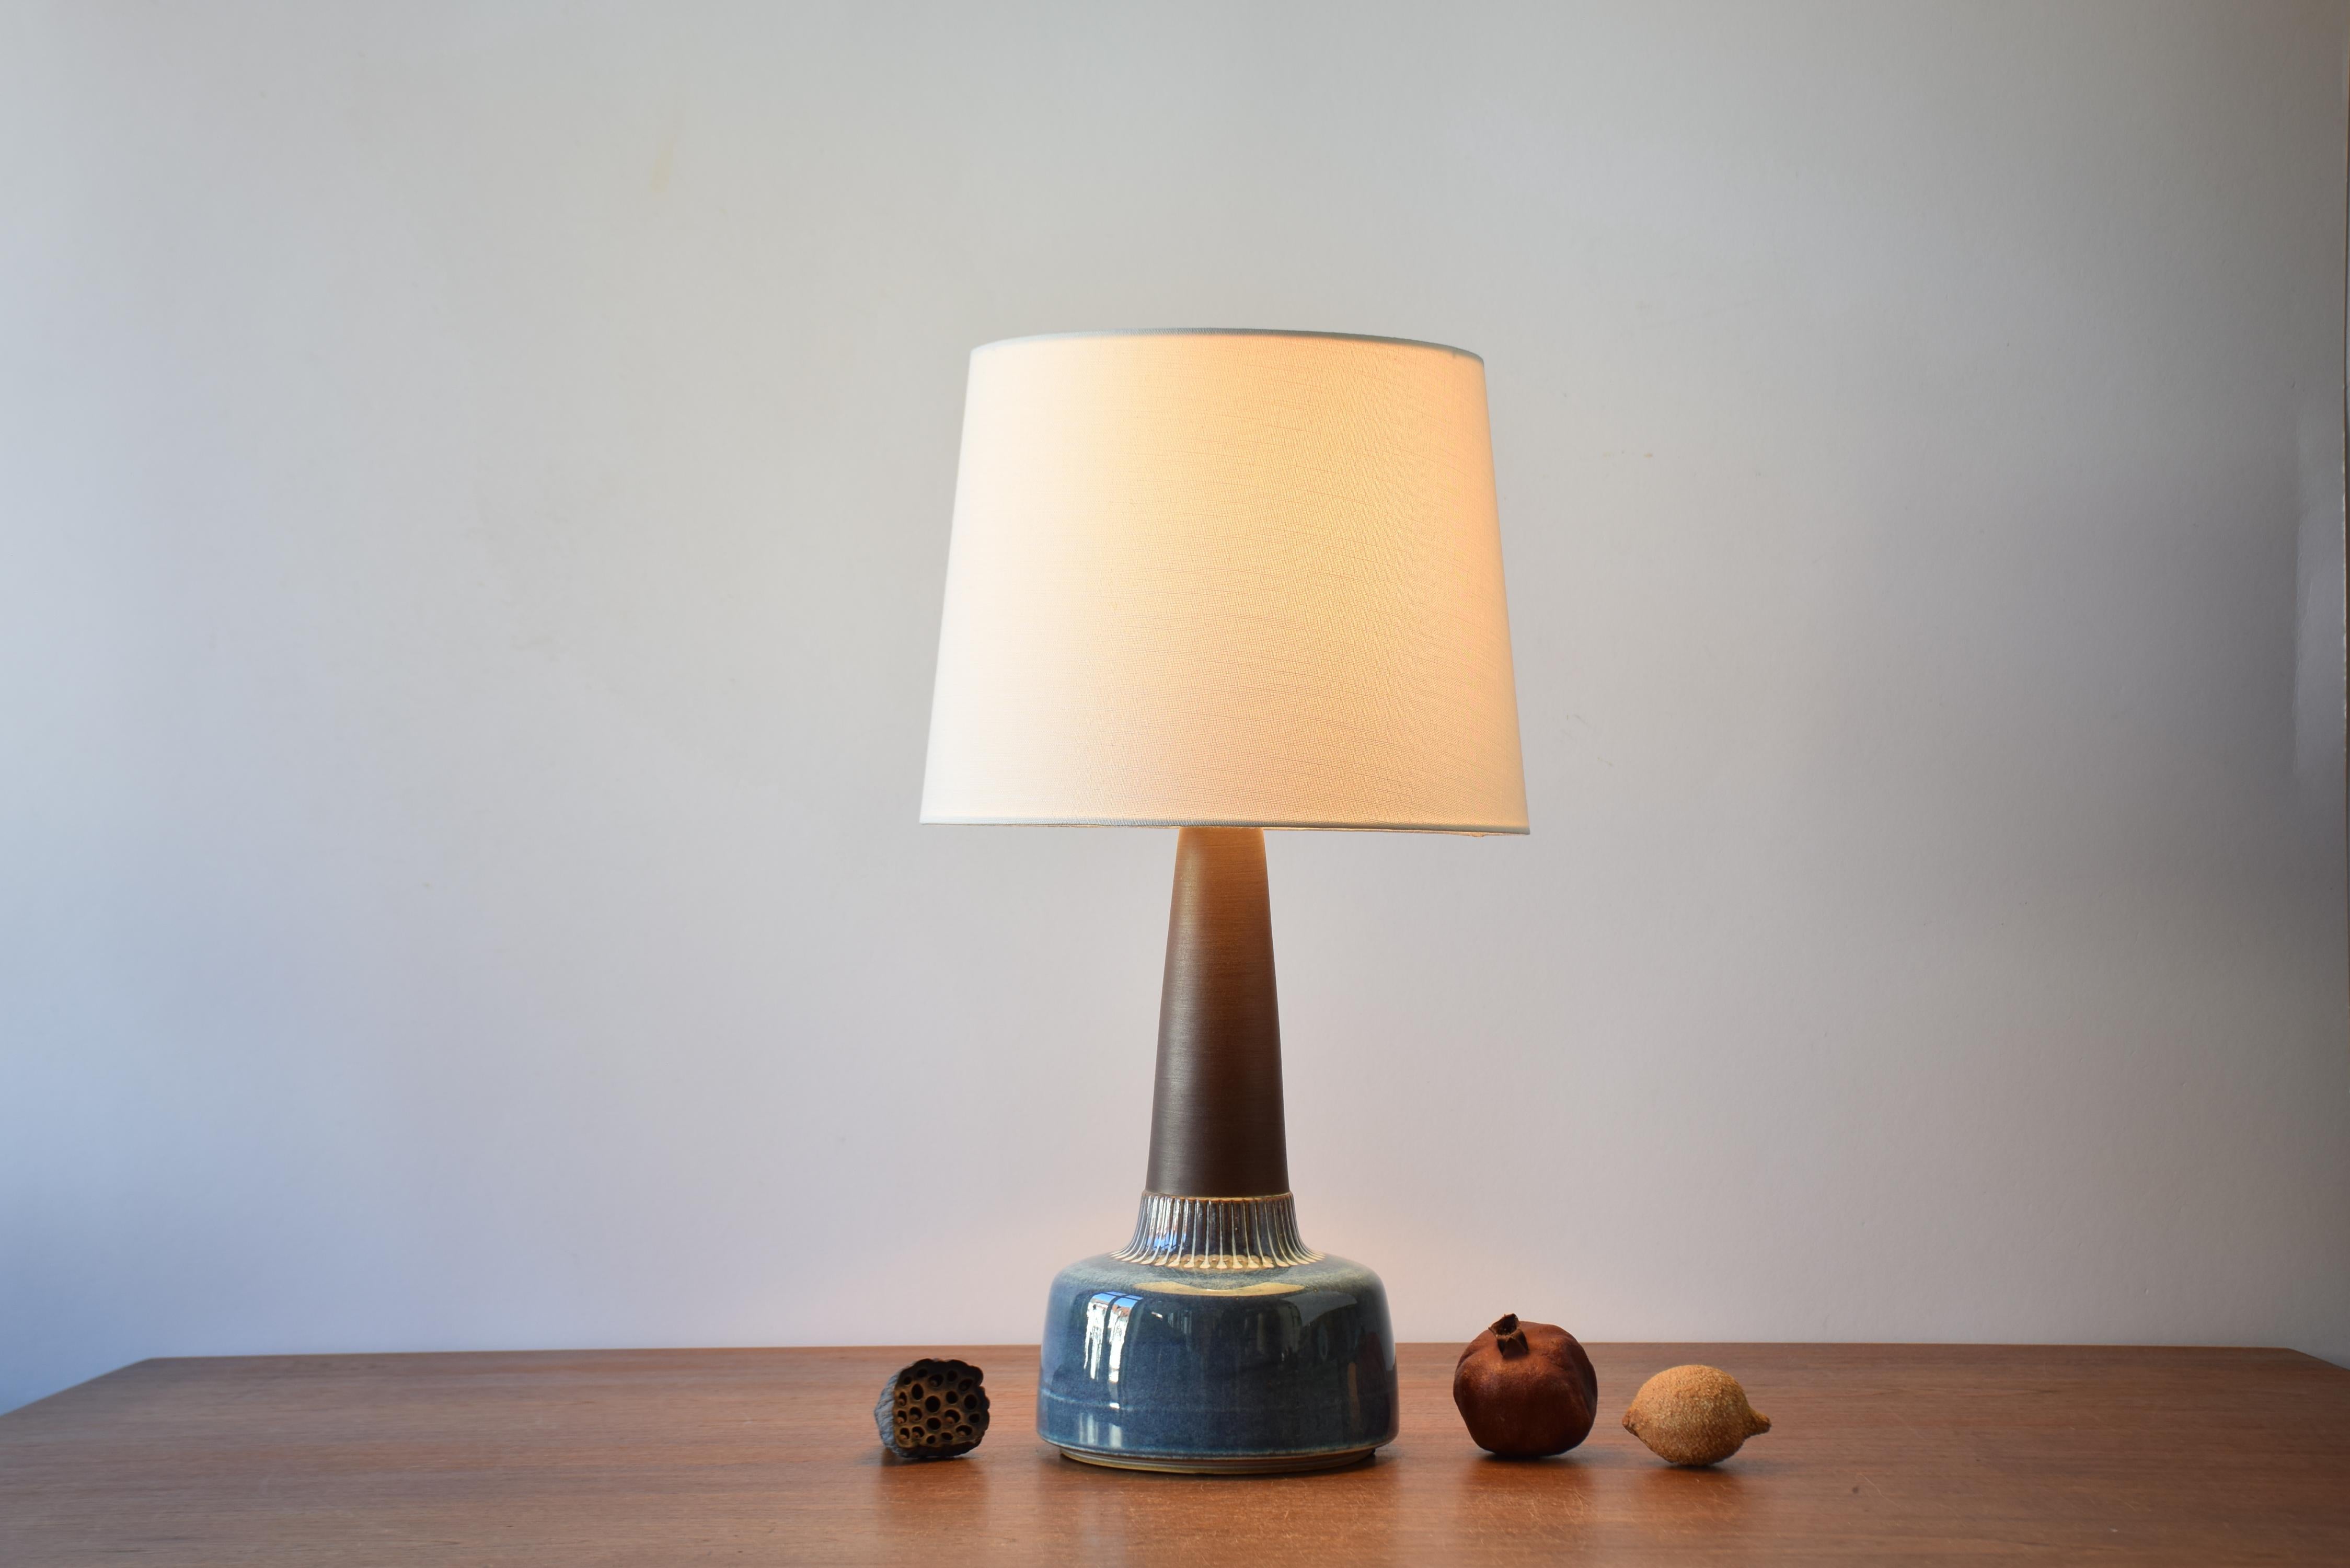 Grande lampe de table danoise du milieu du siècle par le céramiste danois Einar Johansen pour Søholm. Fabriqué vers les années 1960.

La base de la lampe a un col brun mat contrasté par une glaçure brillante aux couleurs de la nacre et des points